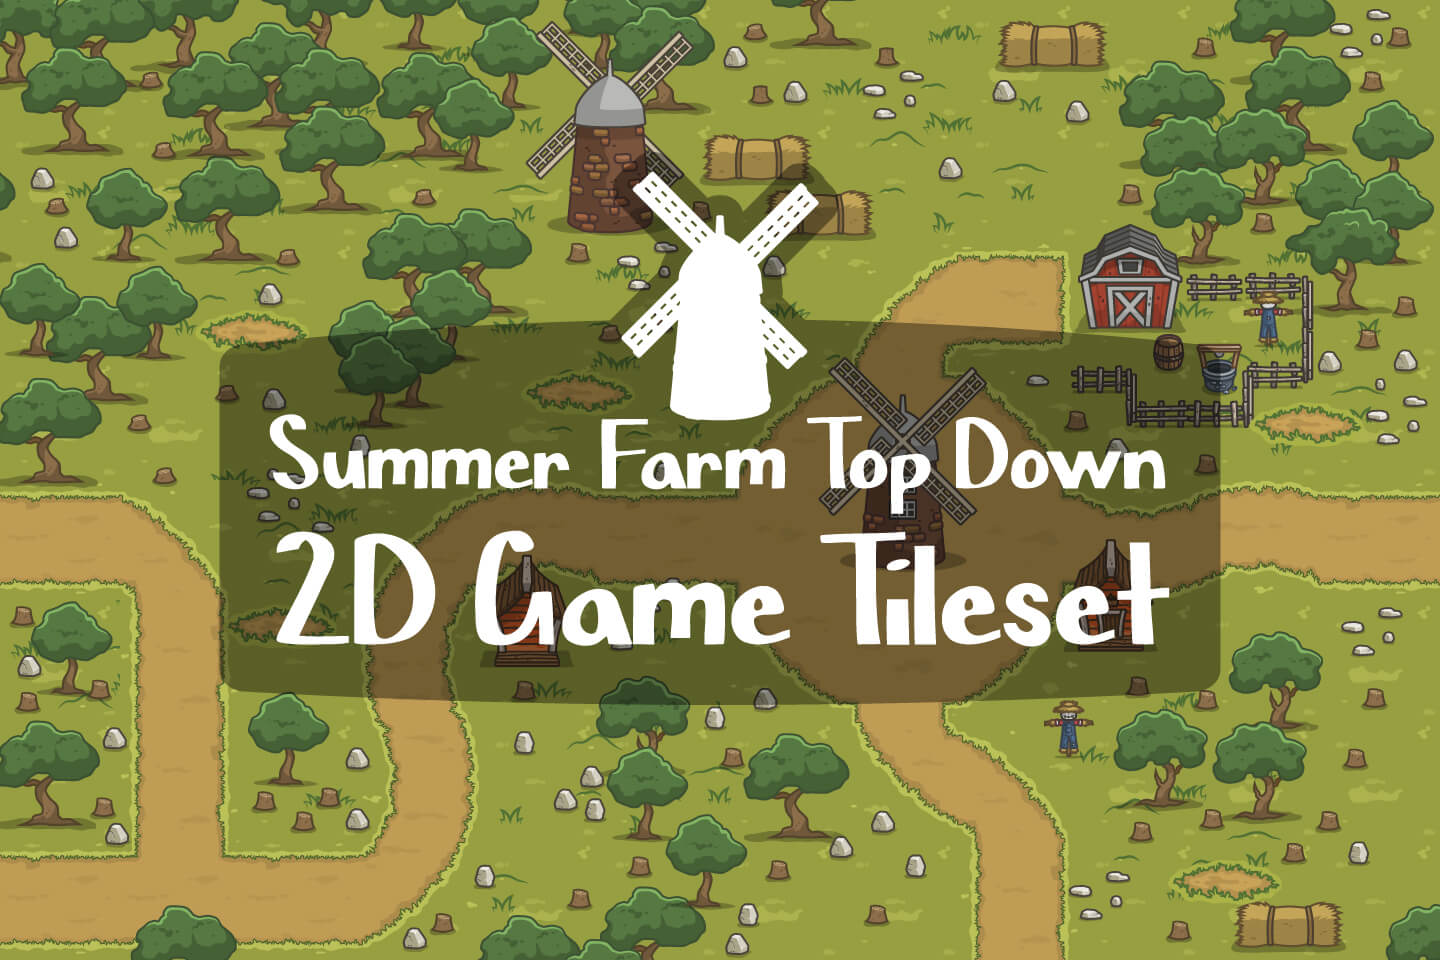 Summer Farm Top Down 2d Game Tileset